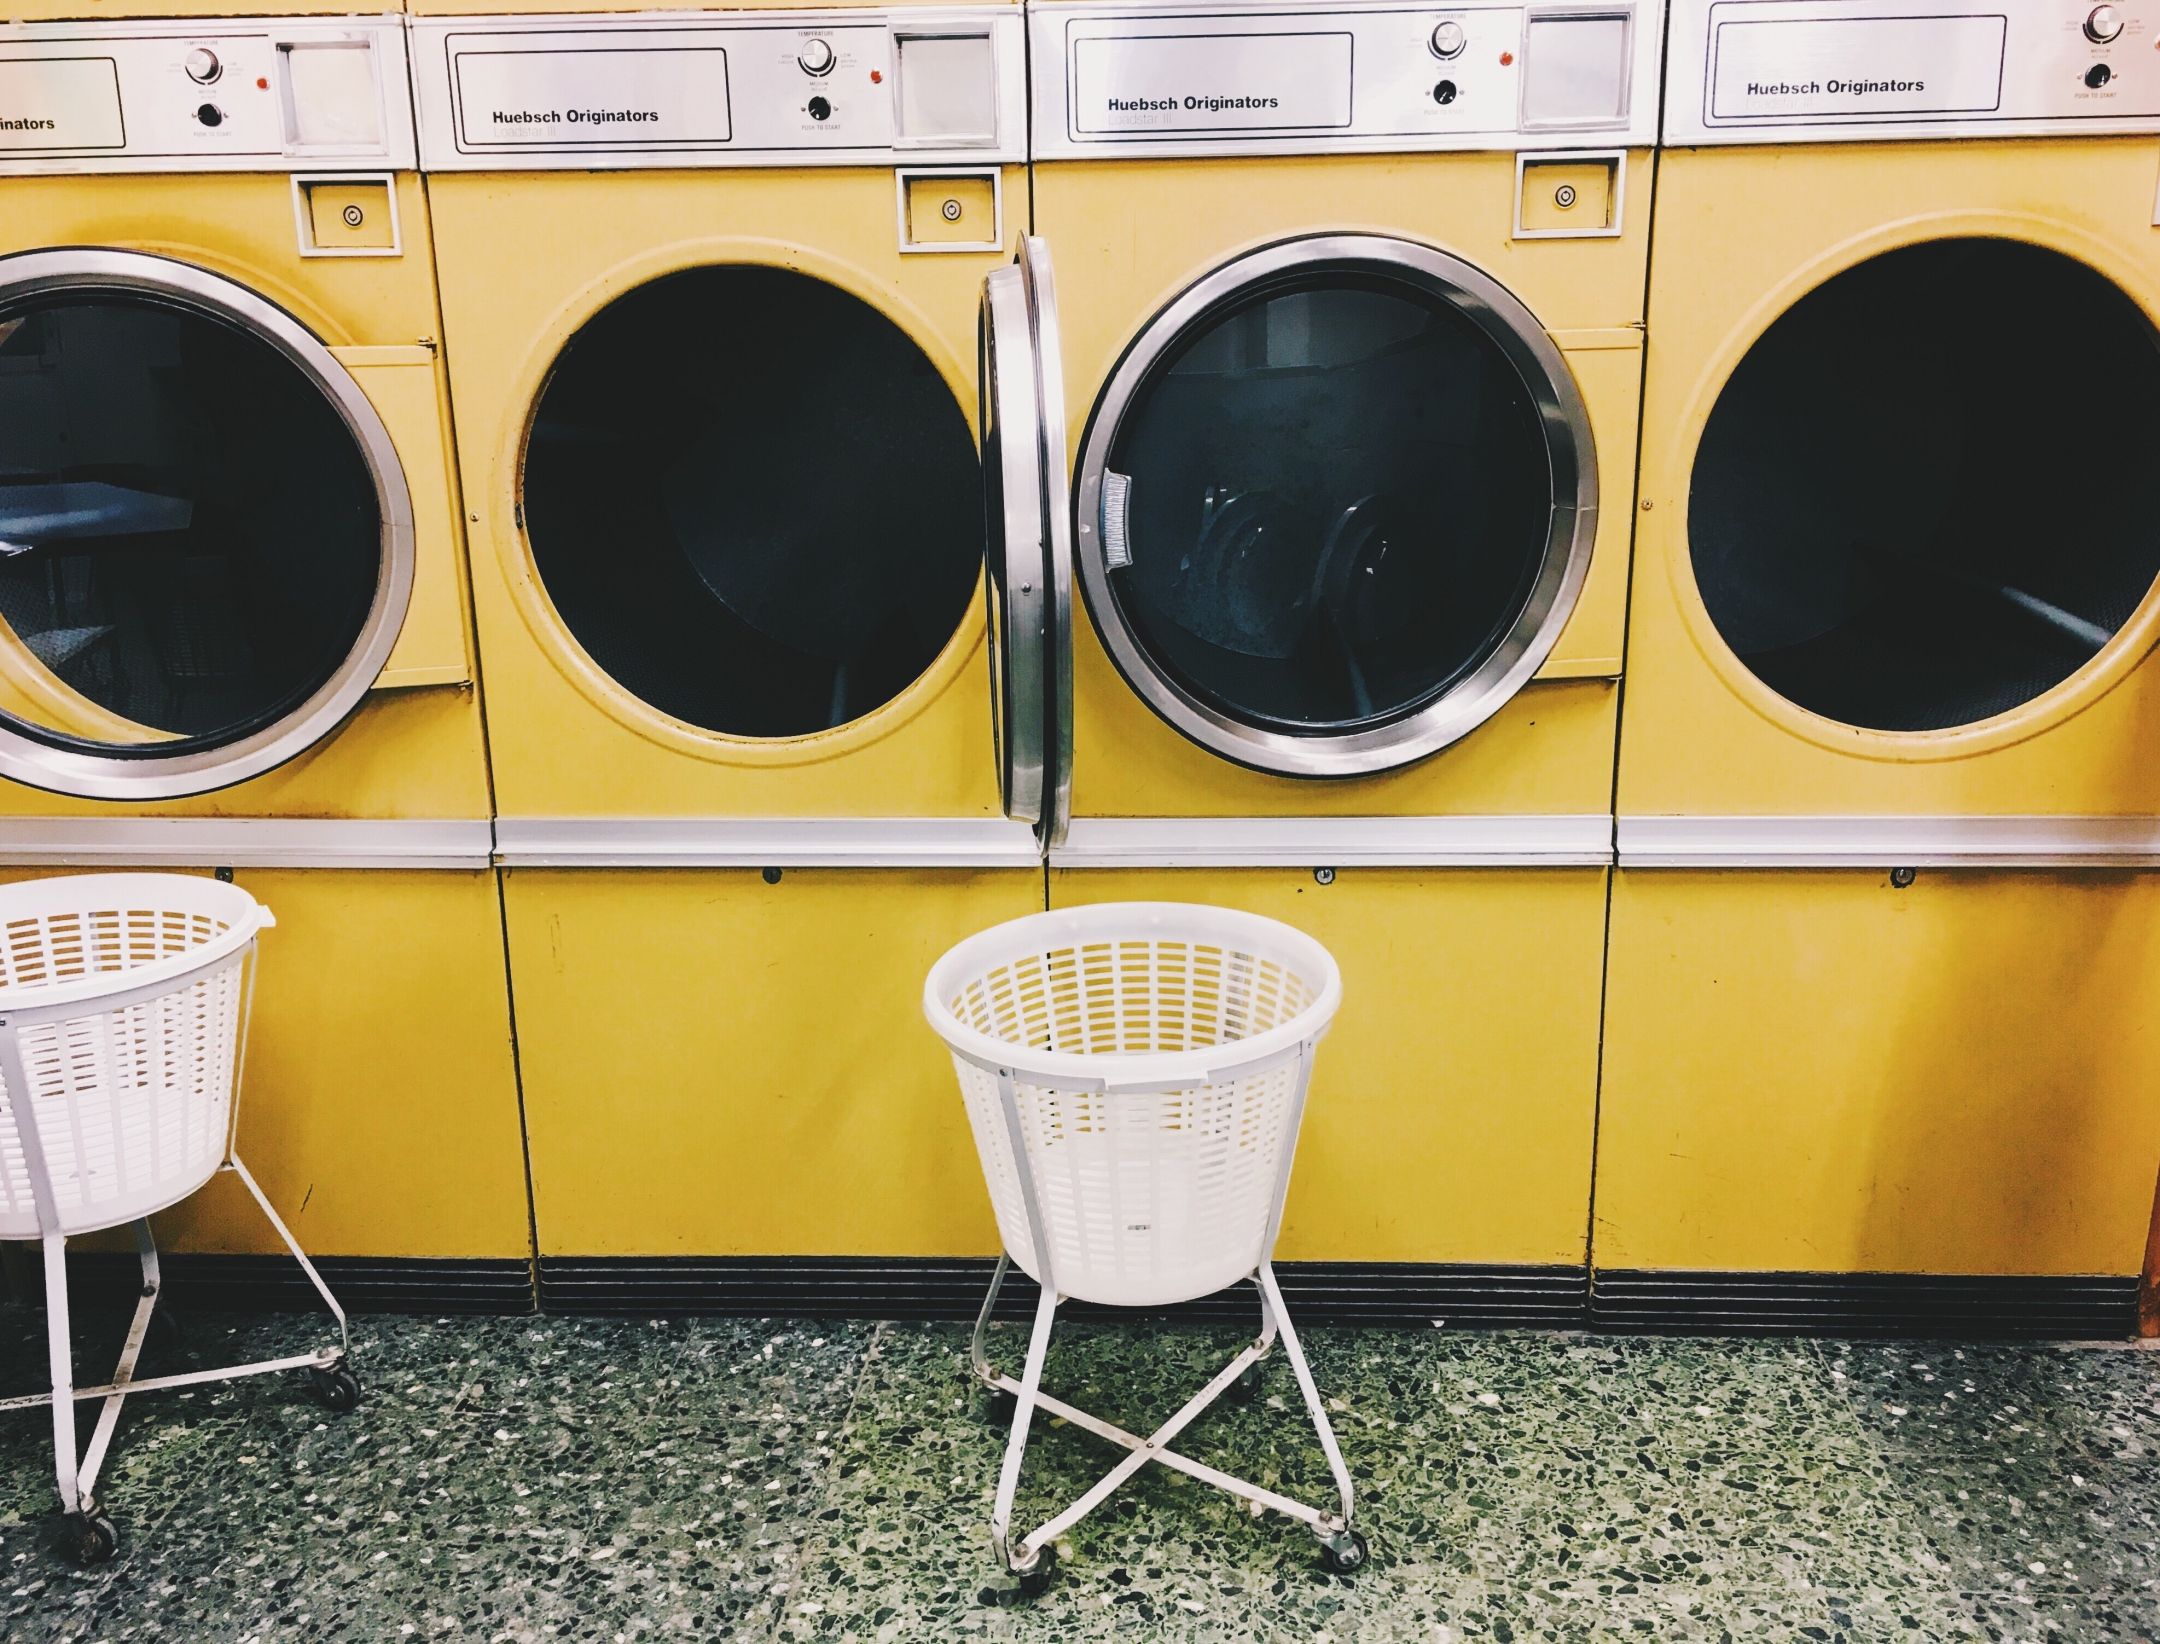 Die rasche Digitalisierung des Waschküchen-Managements